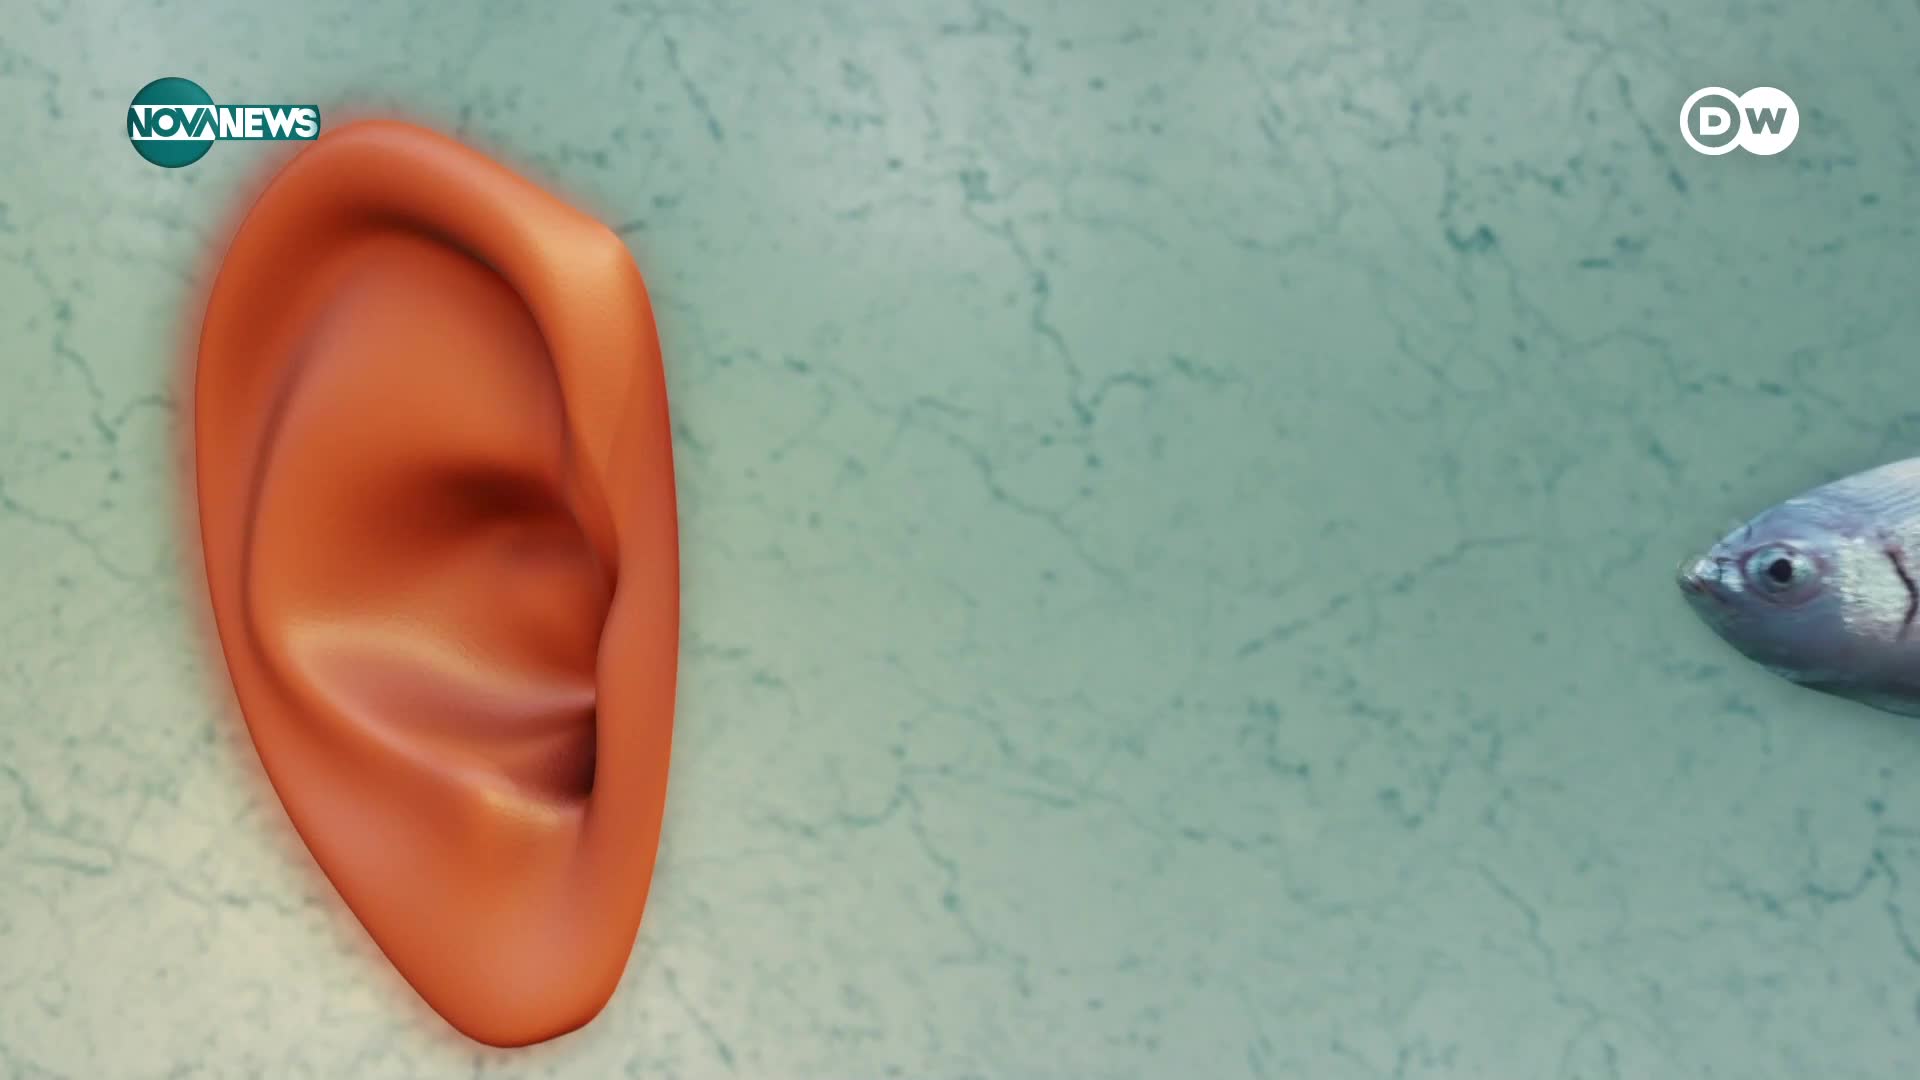 Лявото и дясното ухо възприемат различни звуци: Интересни факти за слуха